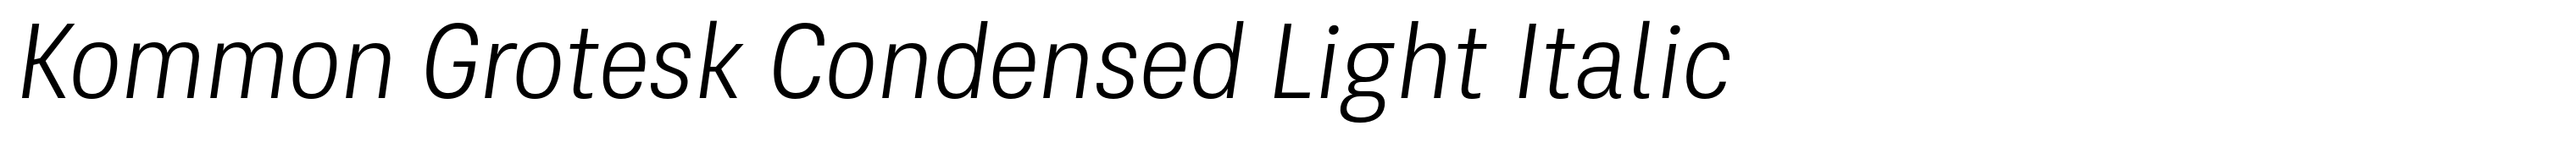 Kommon Grotesk Condensed Light Italic